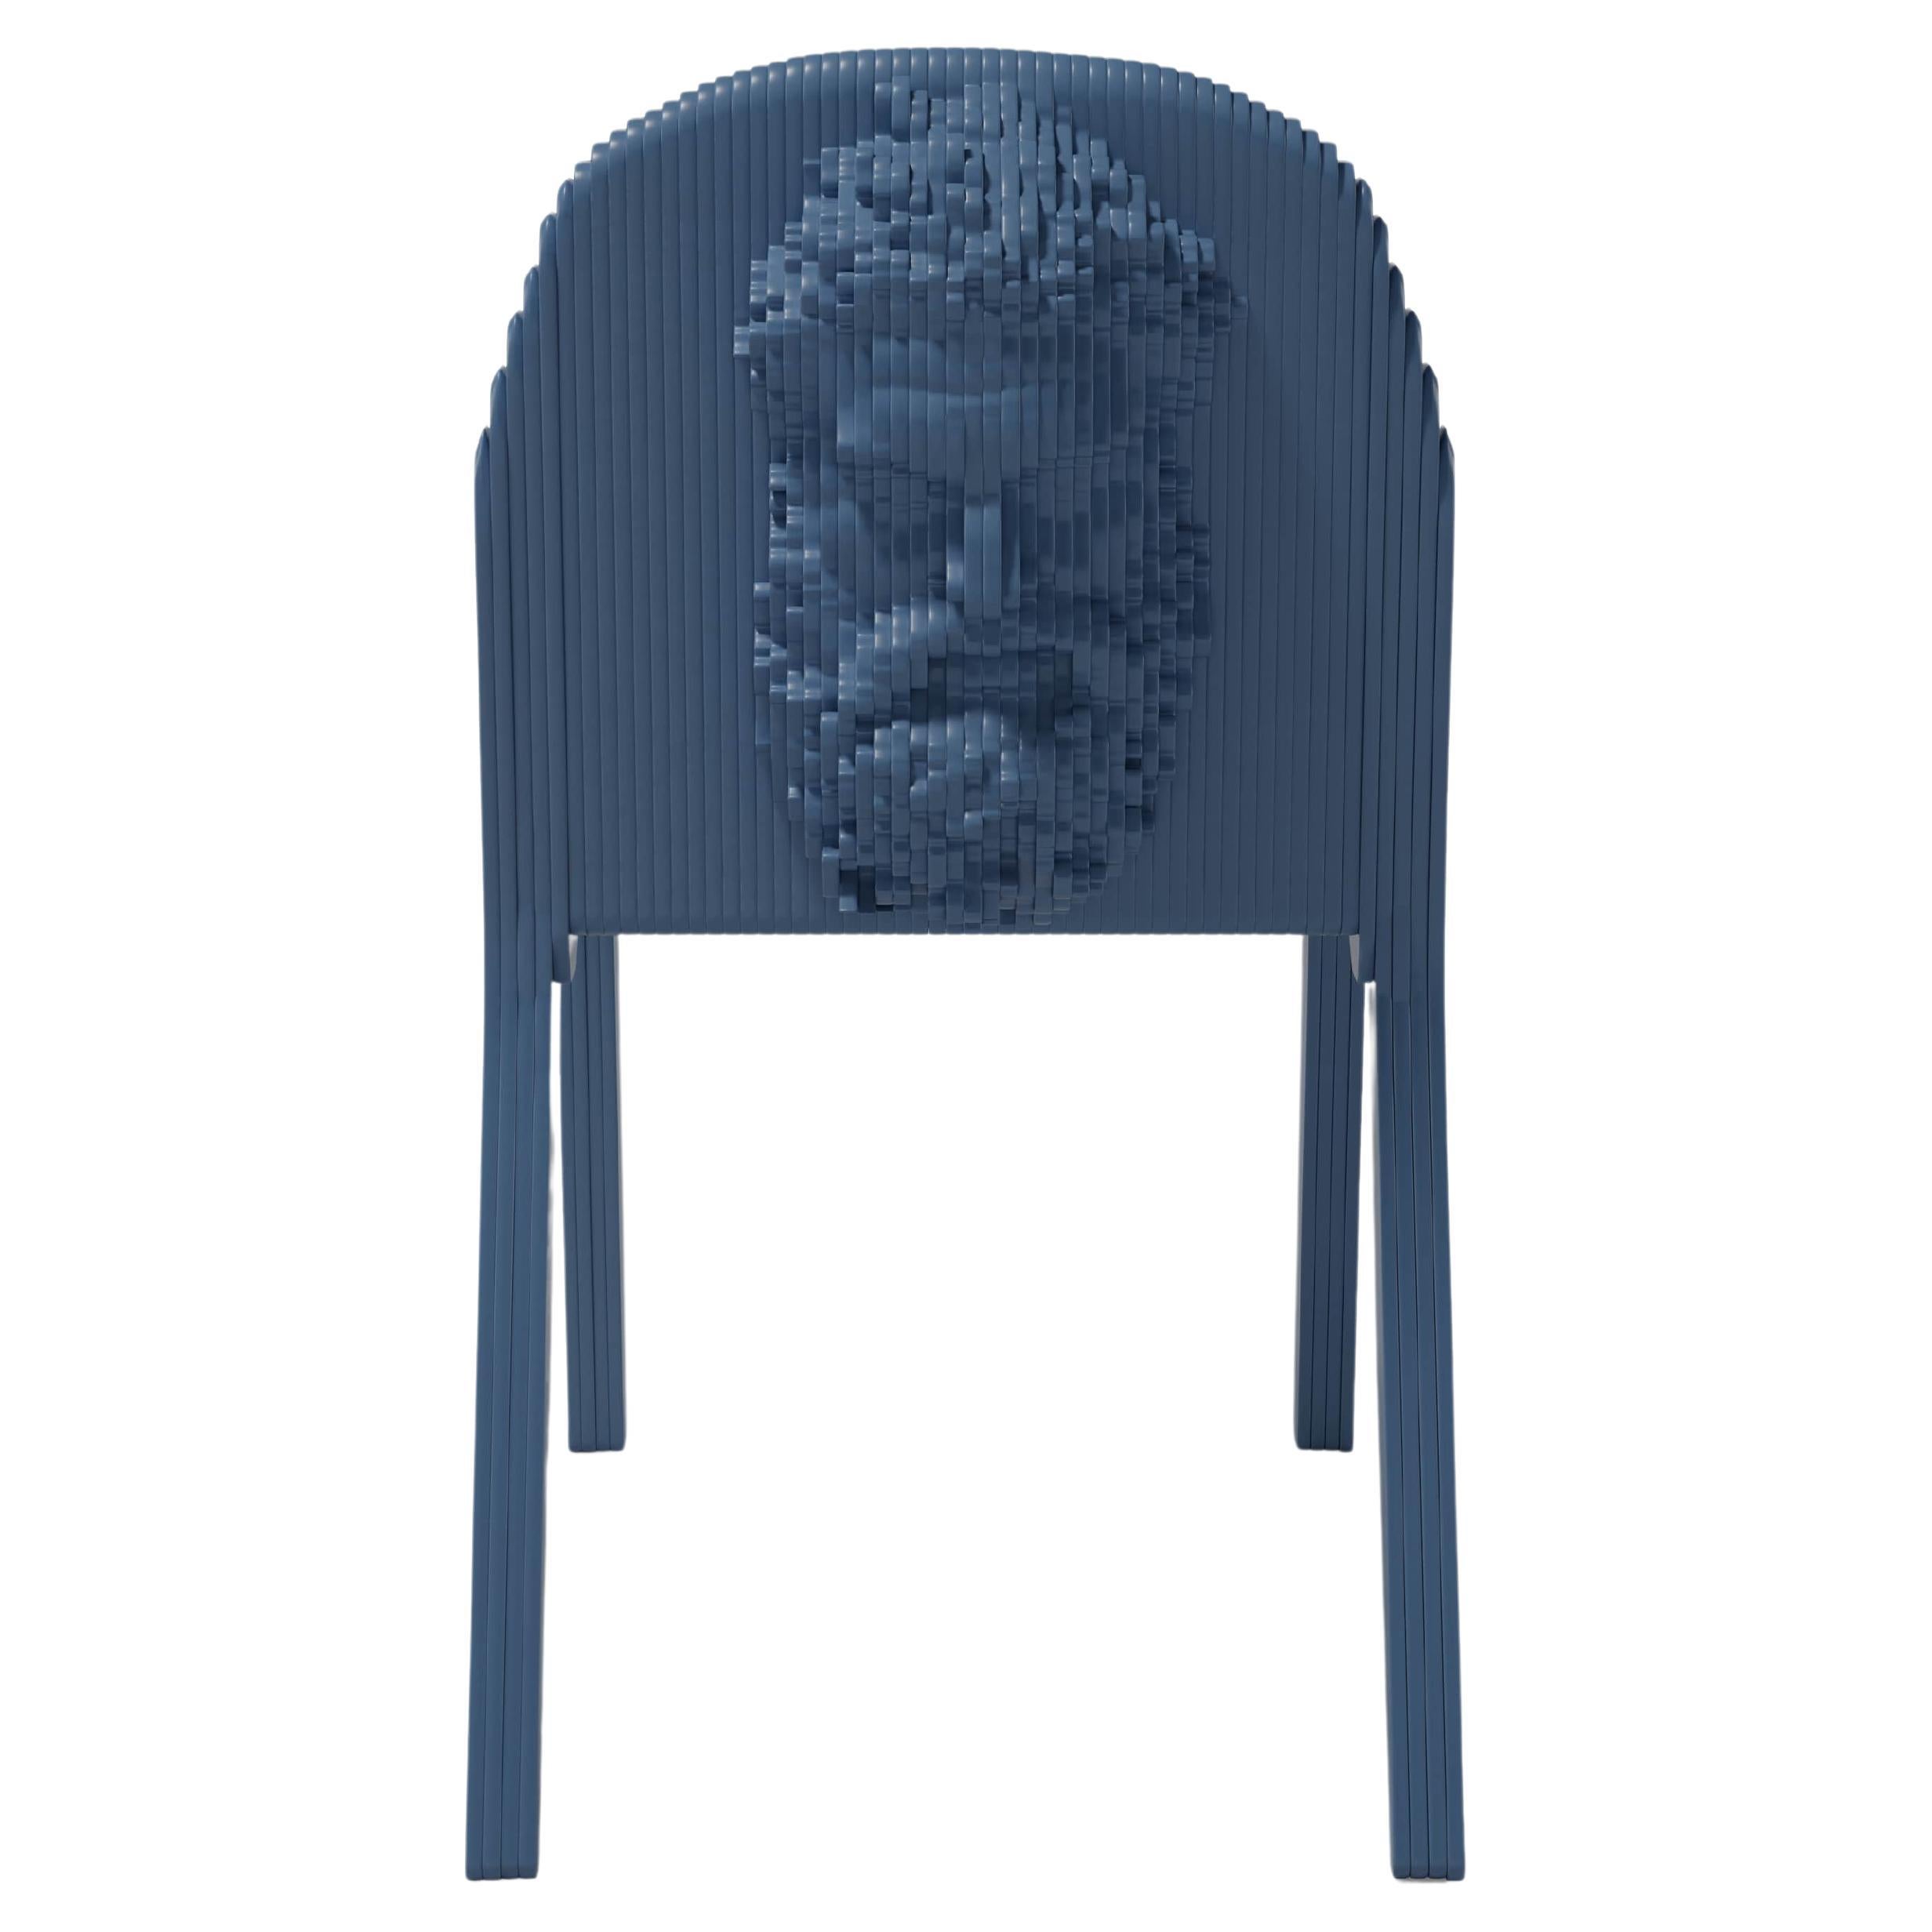 Herkules Stuhl des 21. Jahrhunderts von Debonademeo Studio und Daniele Fortuna